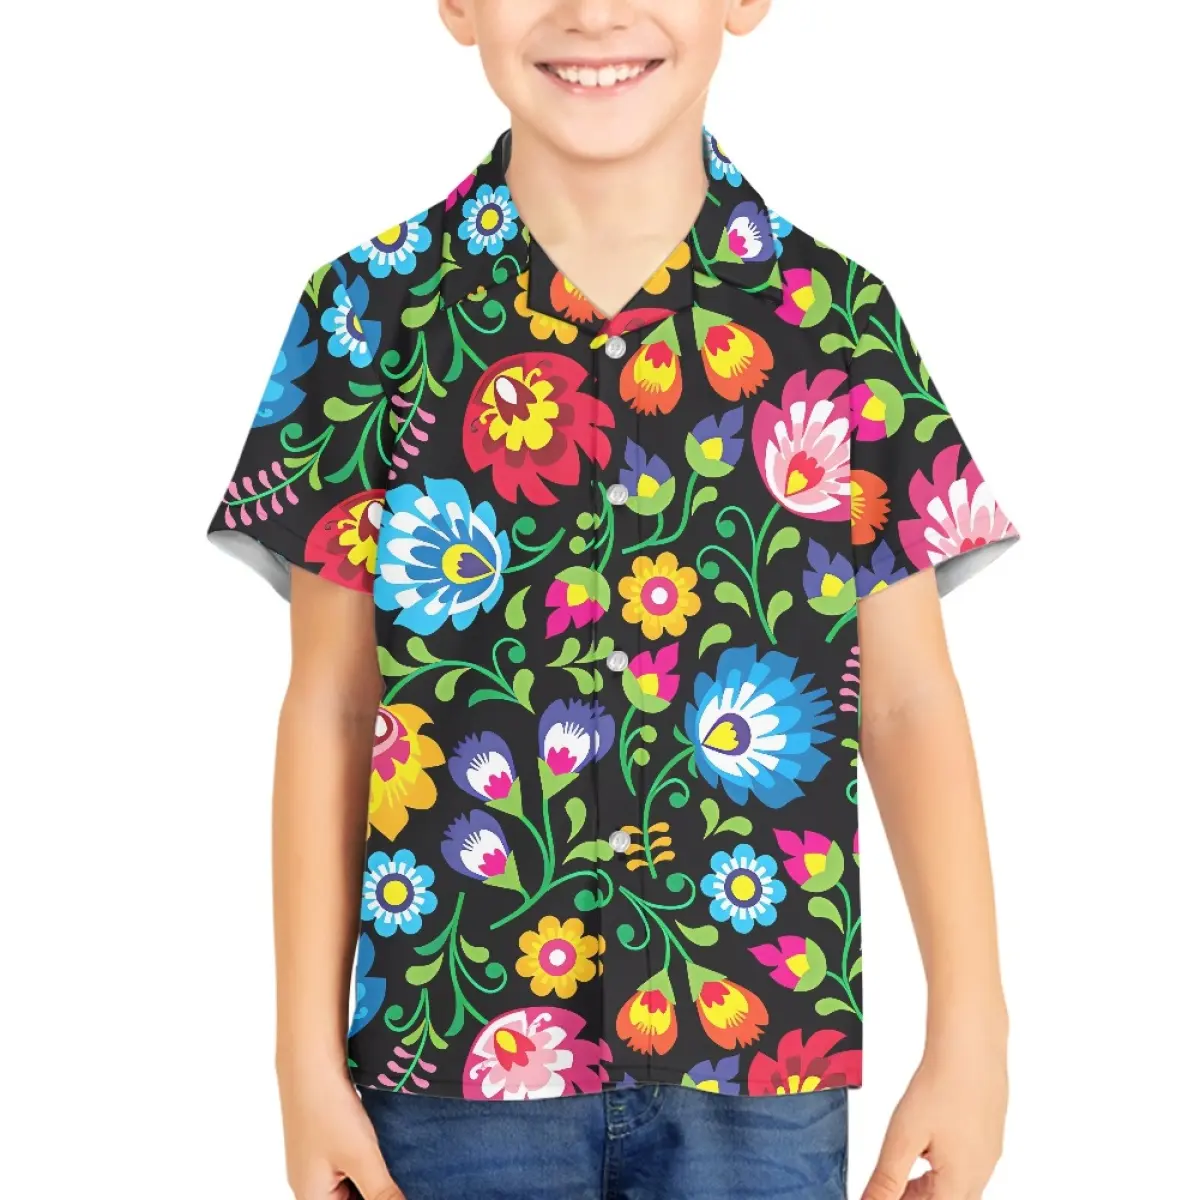 Coloré mexique fleurs bébé enfants chemises Vintage mode Folk Art Style chemise hauts pour garçons filles modèles personnalisés vêtements